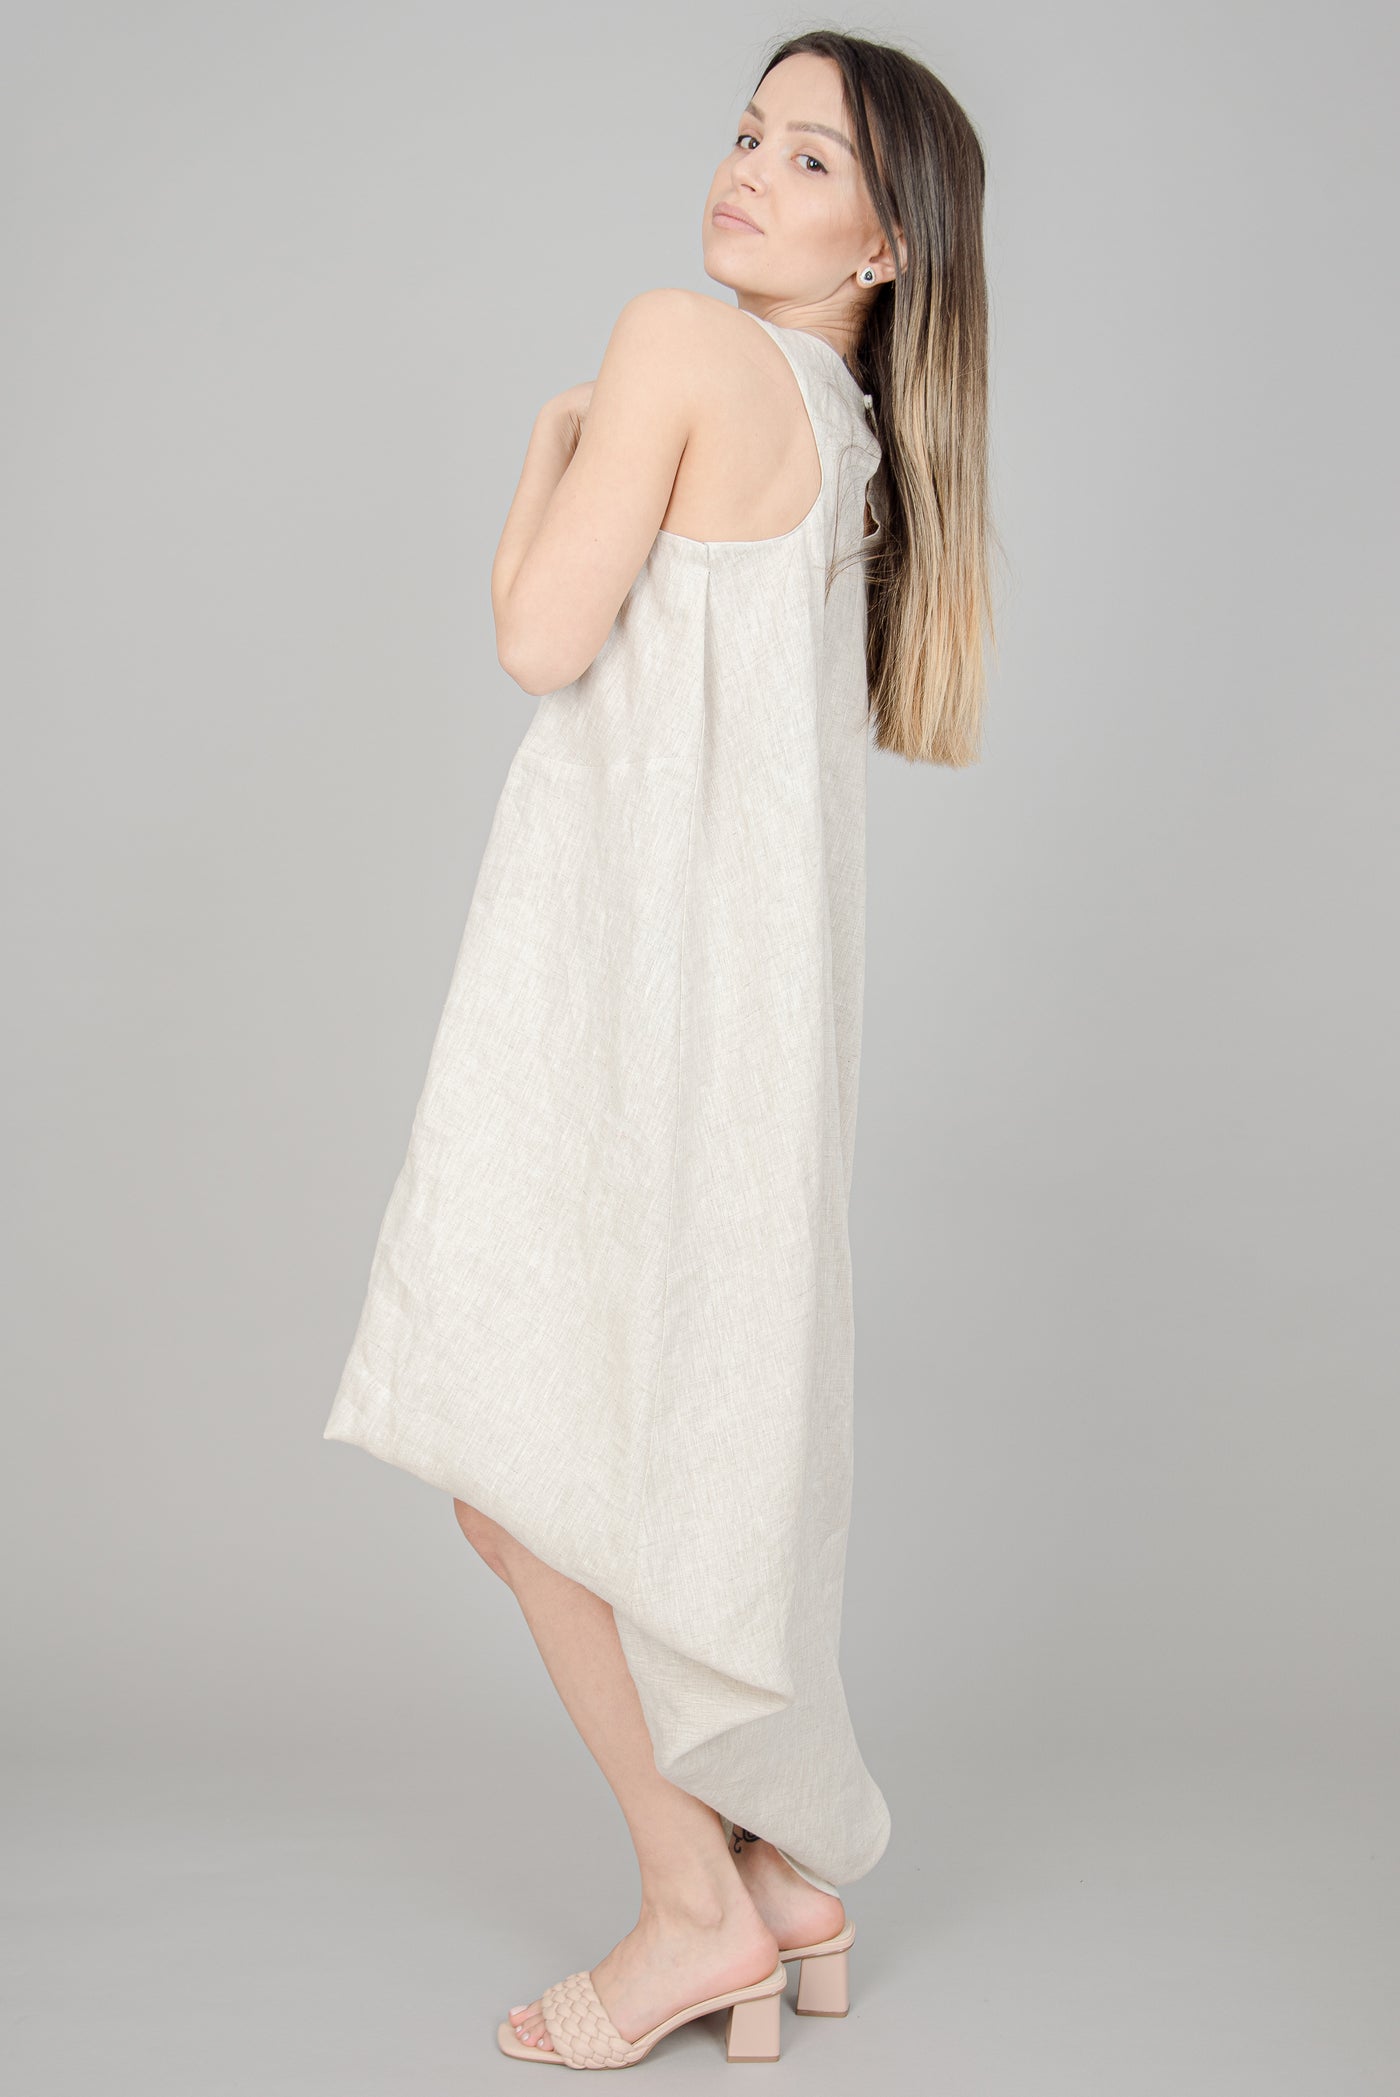 Linen convertible sleeveless dress F1393